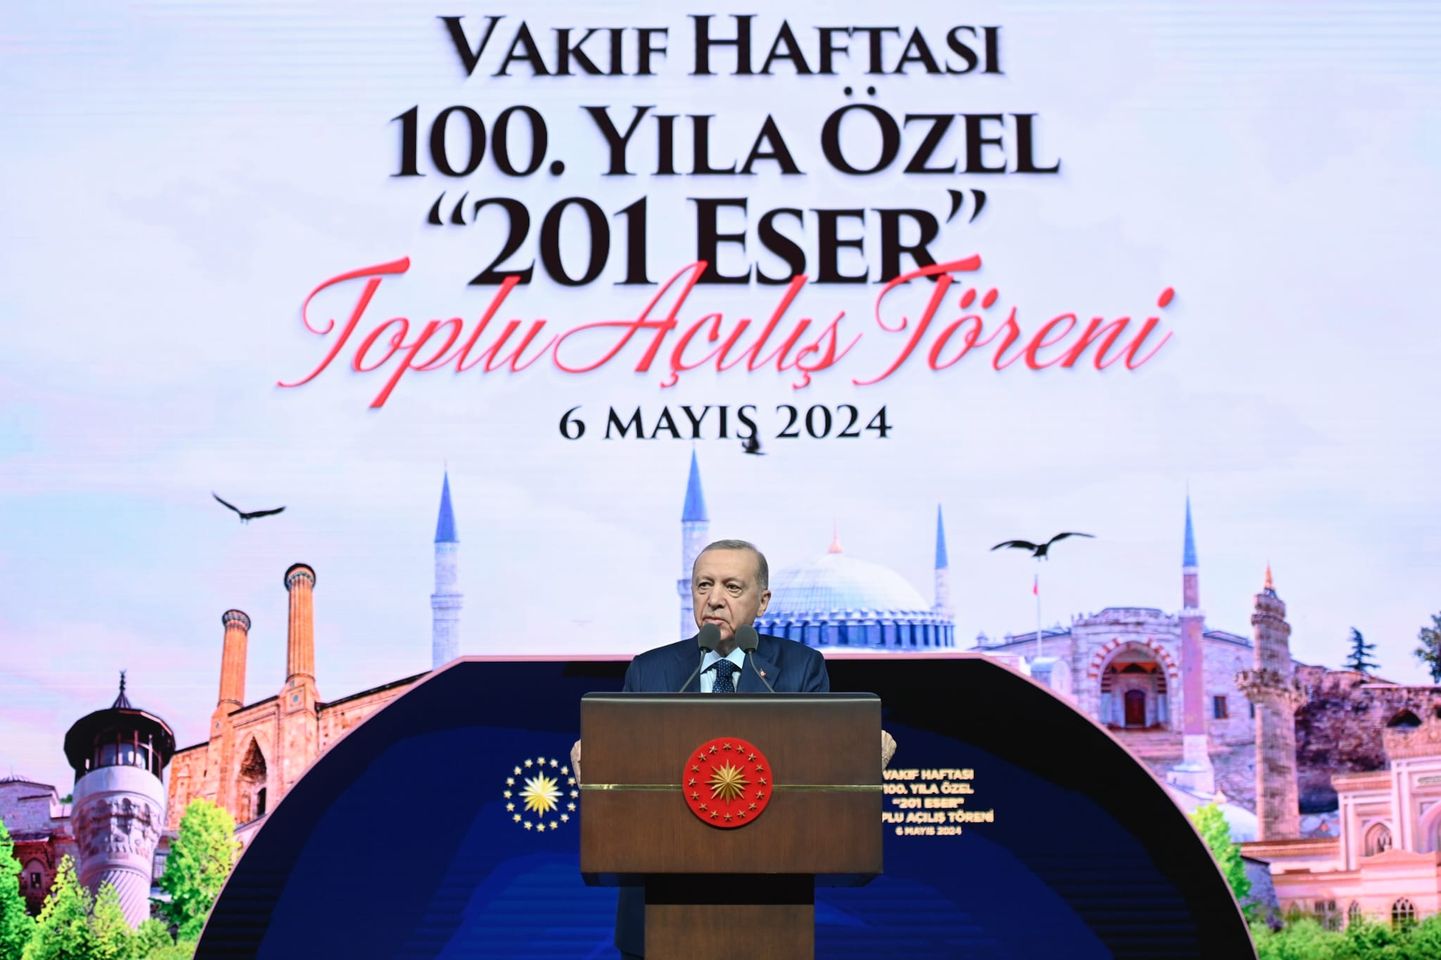 Kültür ve Turizm Bakanı Mehmet Nuri Ersoy, Vakıf Haftası'nda yapılan 100'üncü Yıl Özel Toplu Açılış Töreni'nde konuştu